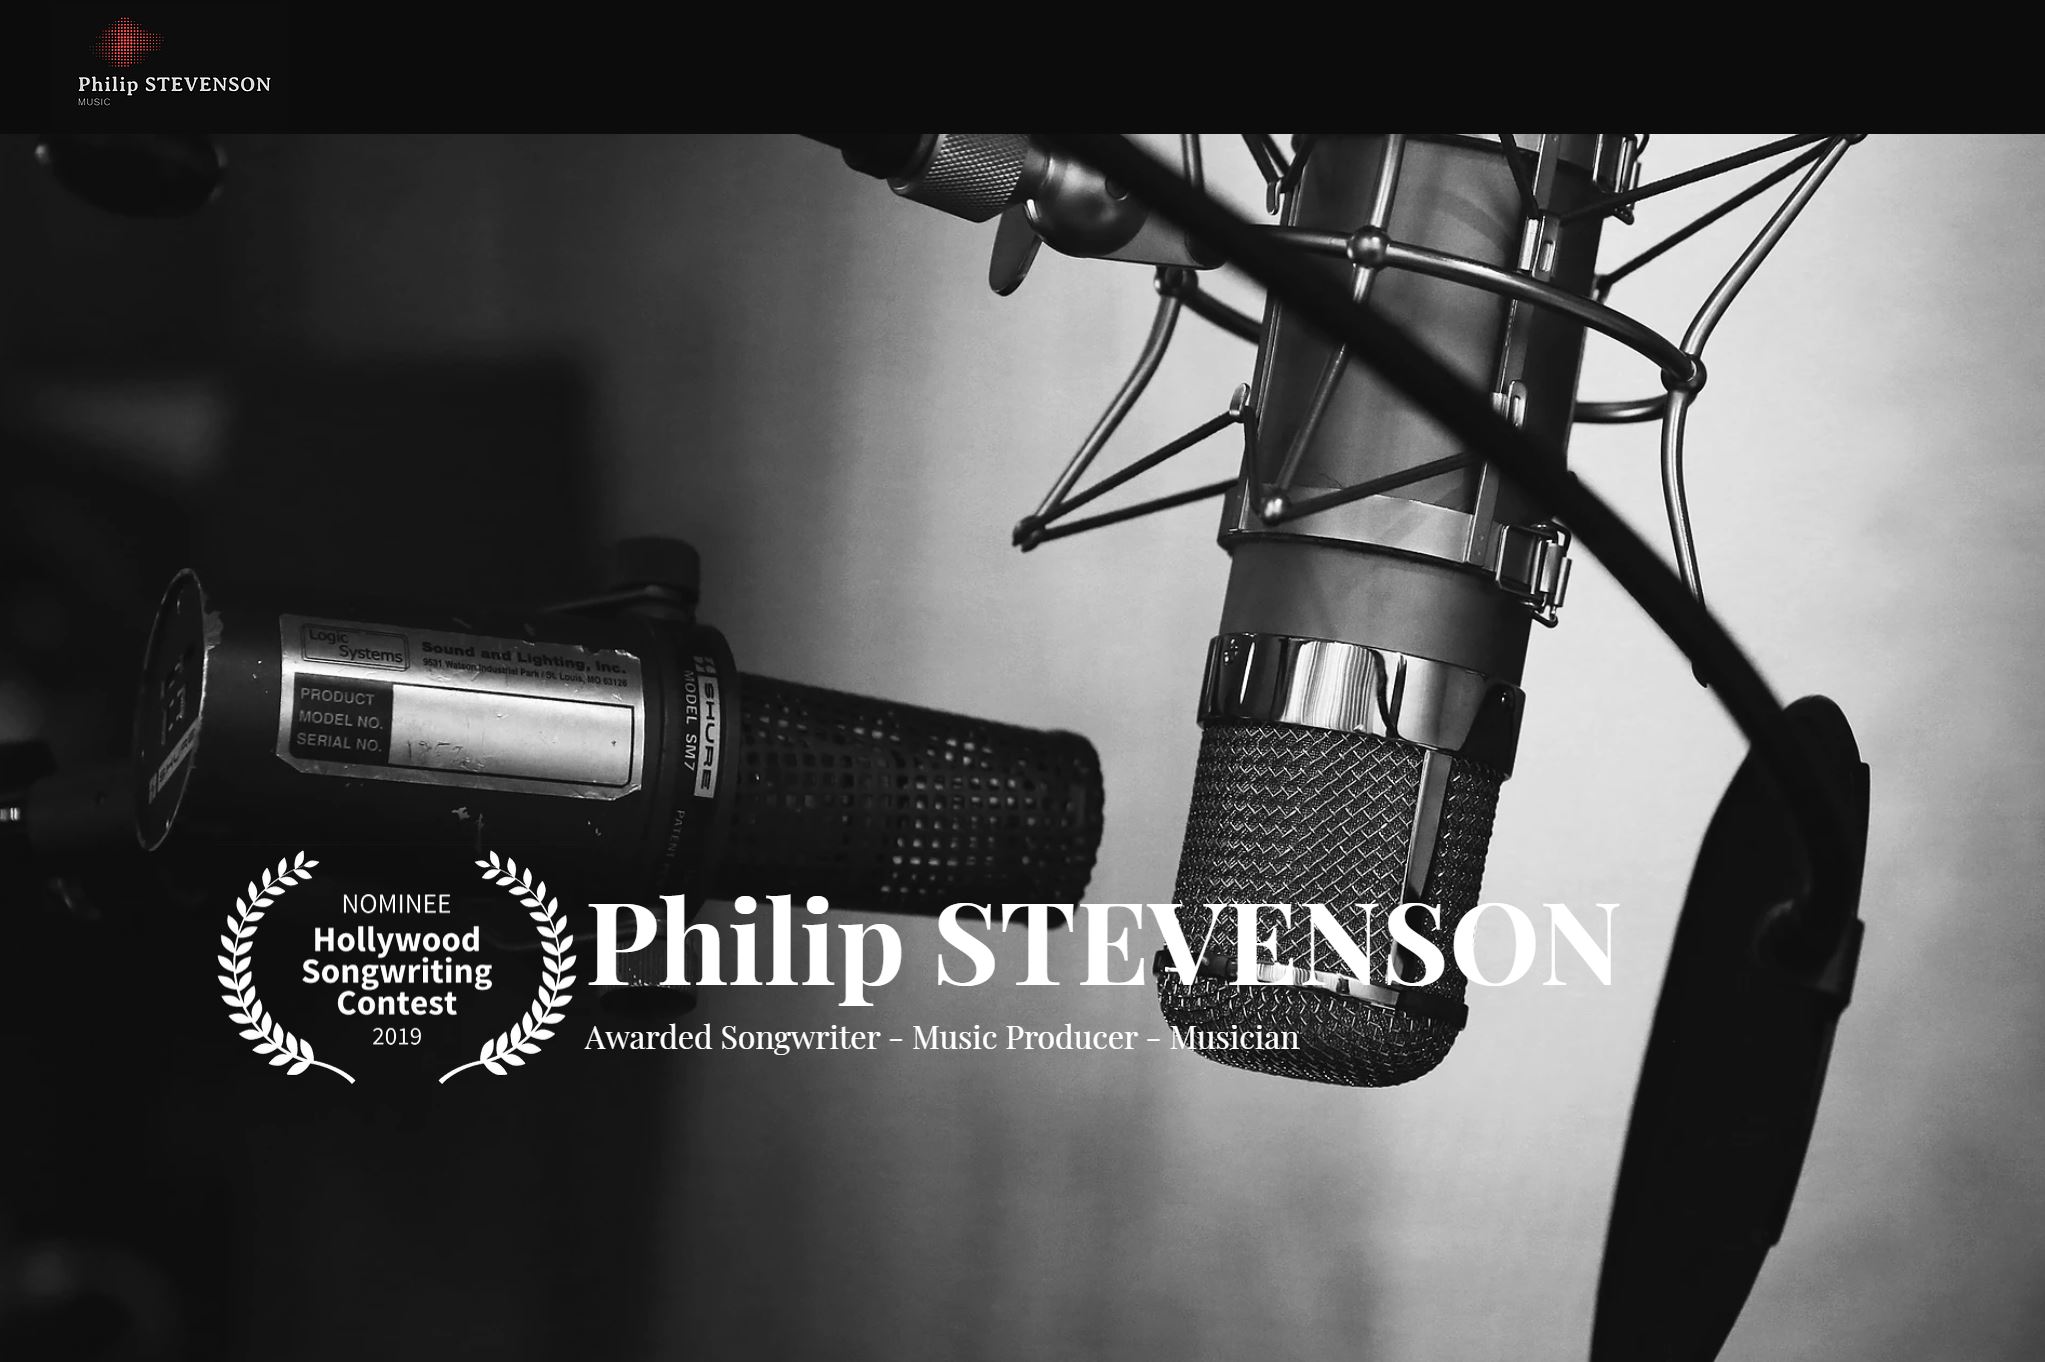 Philip STEVENSON